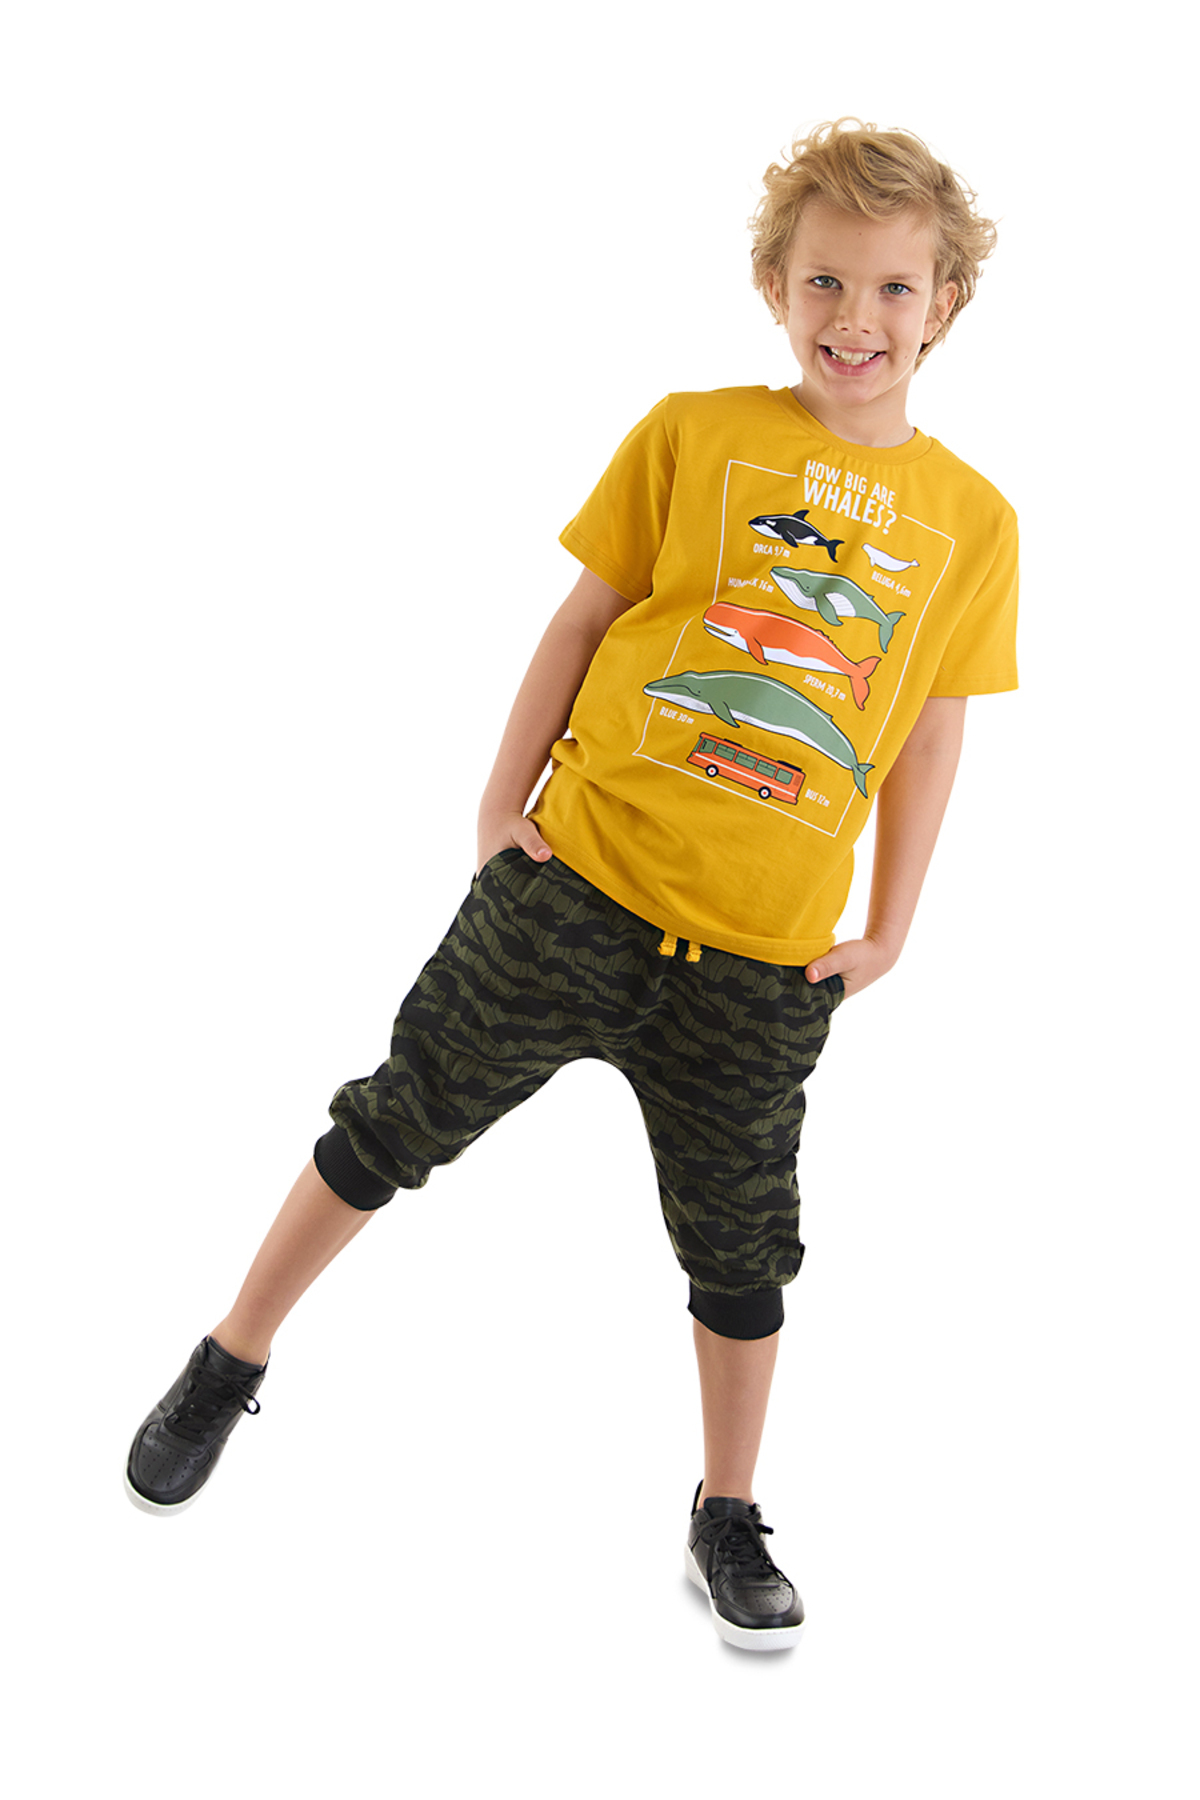 Levně mshb&g Big Whales Boy's T-shirt Capri Set